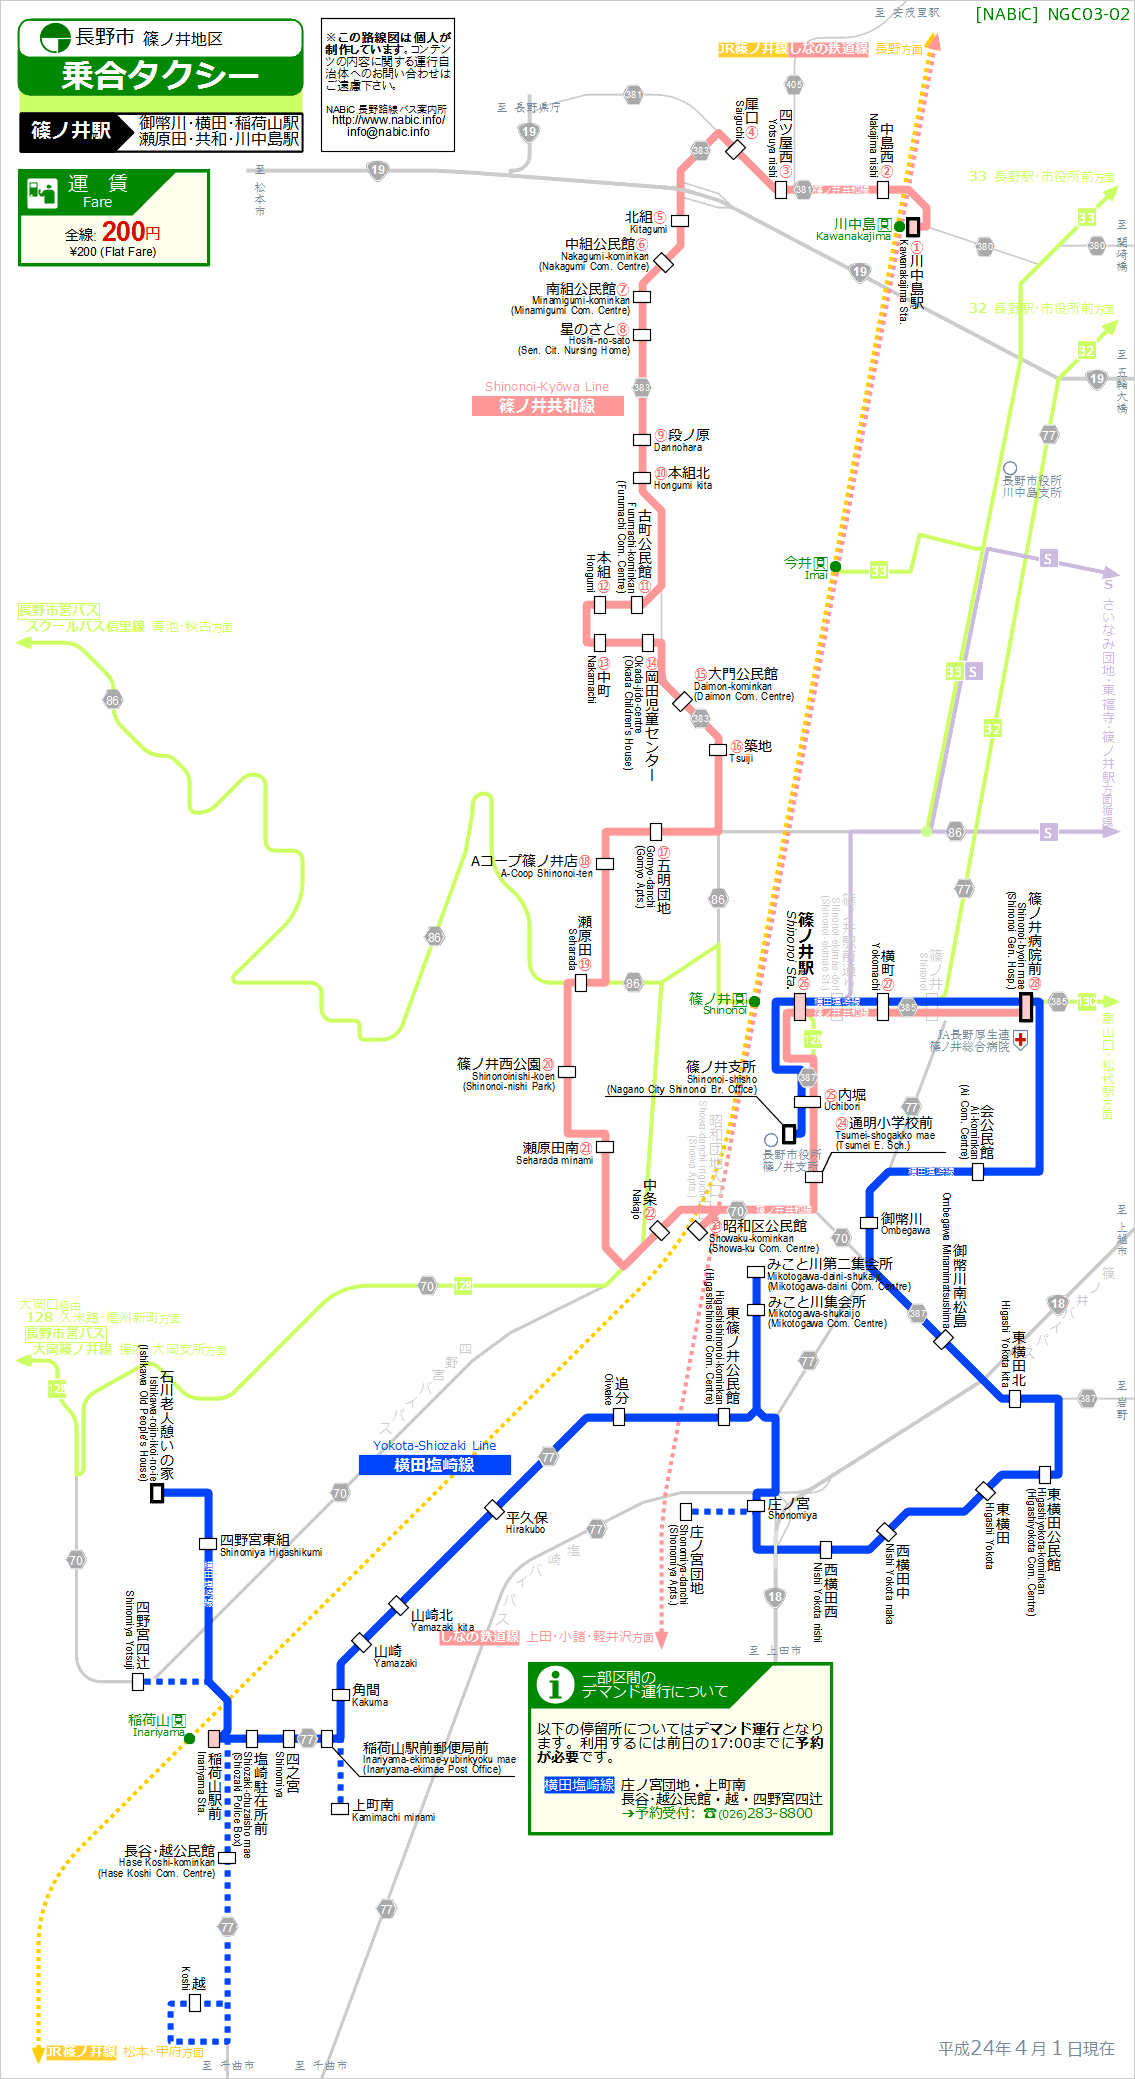 路線図[NGC03-02]